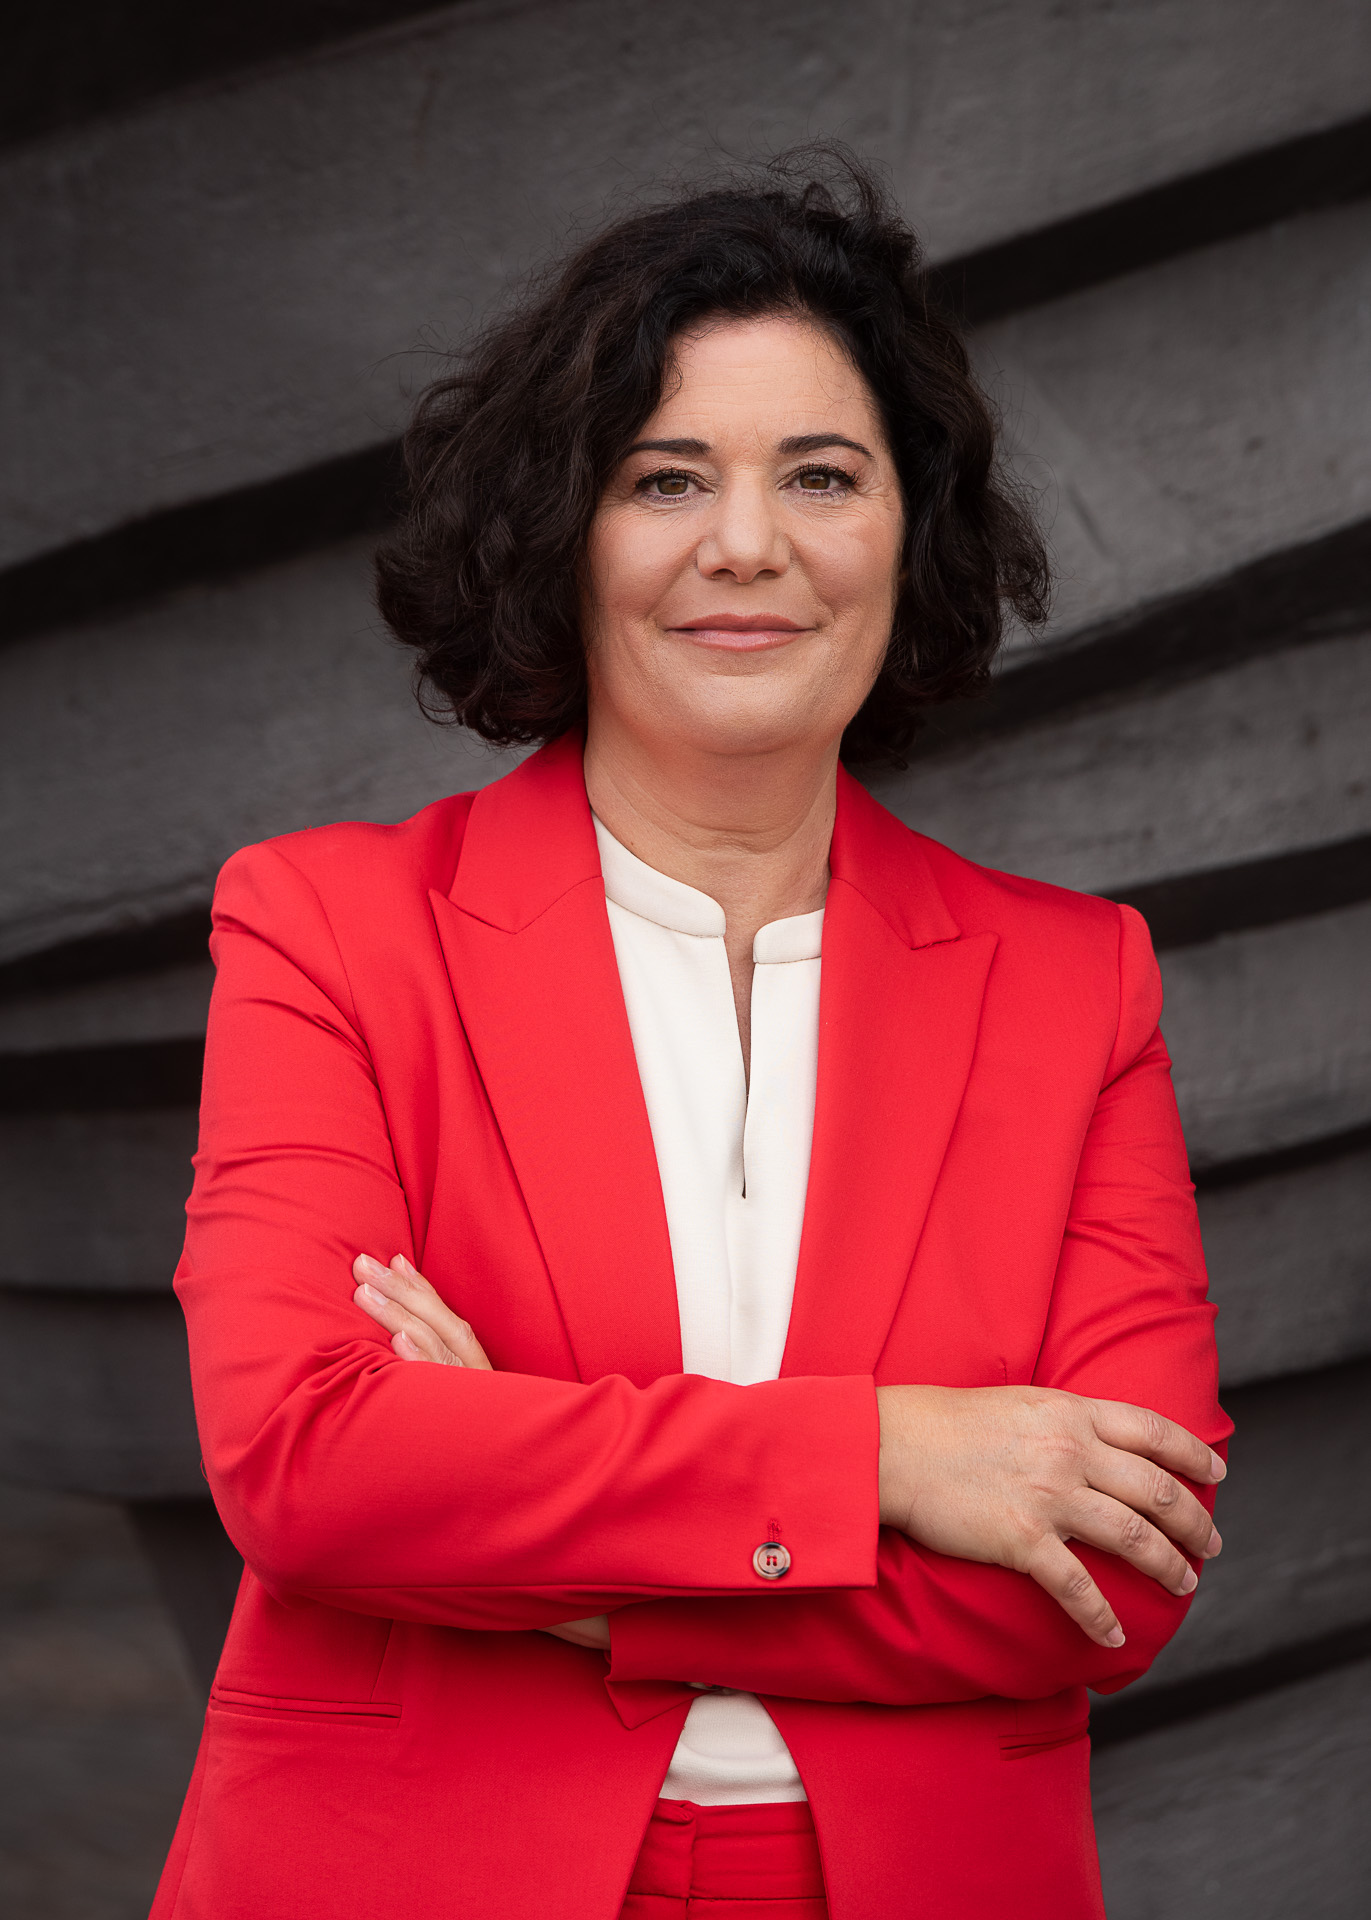 Catherine Antonetti, Geschäftsführerin der Antonetti GmbH